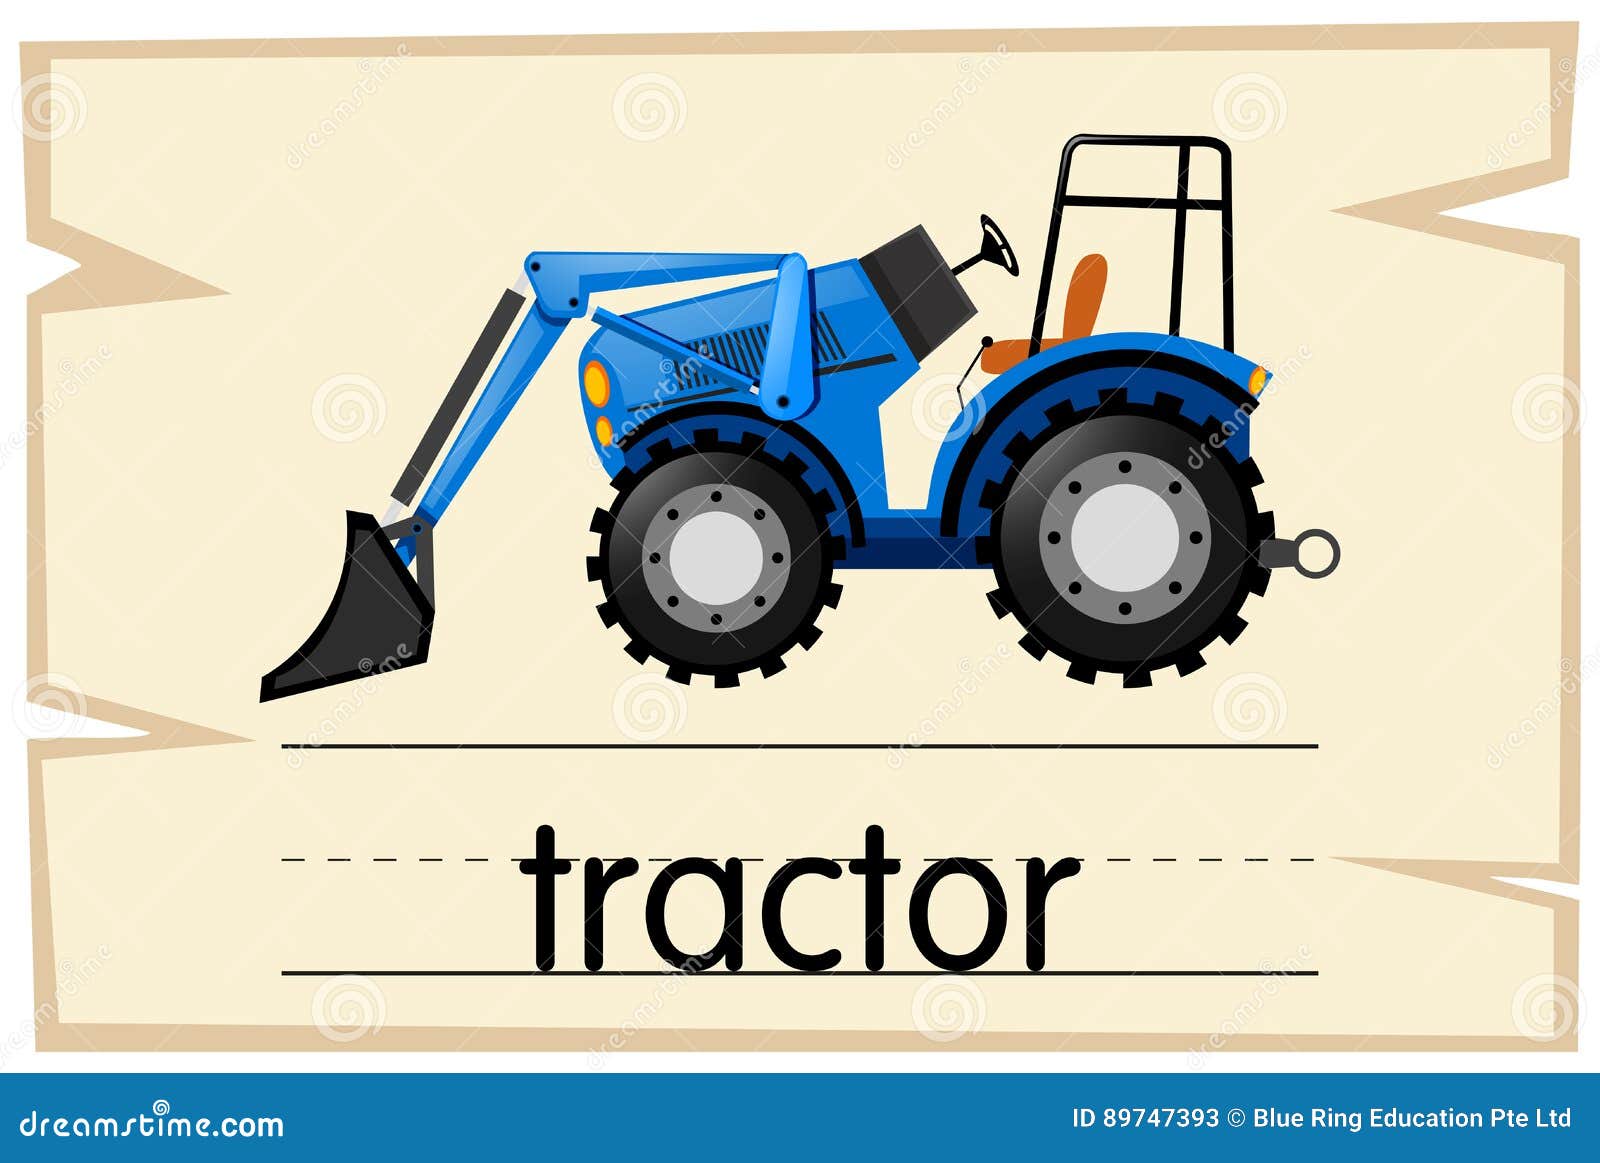 ¿Cómo se dice en inglés tractor